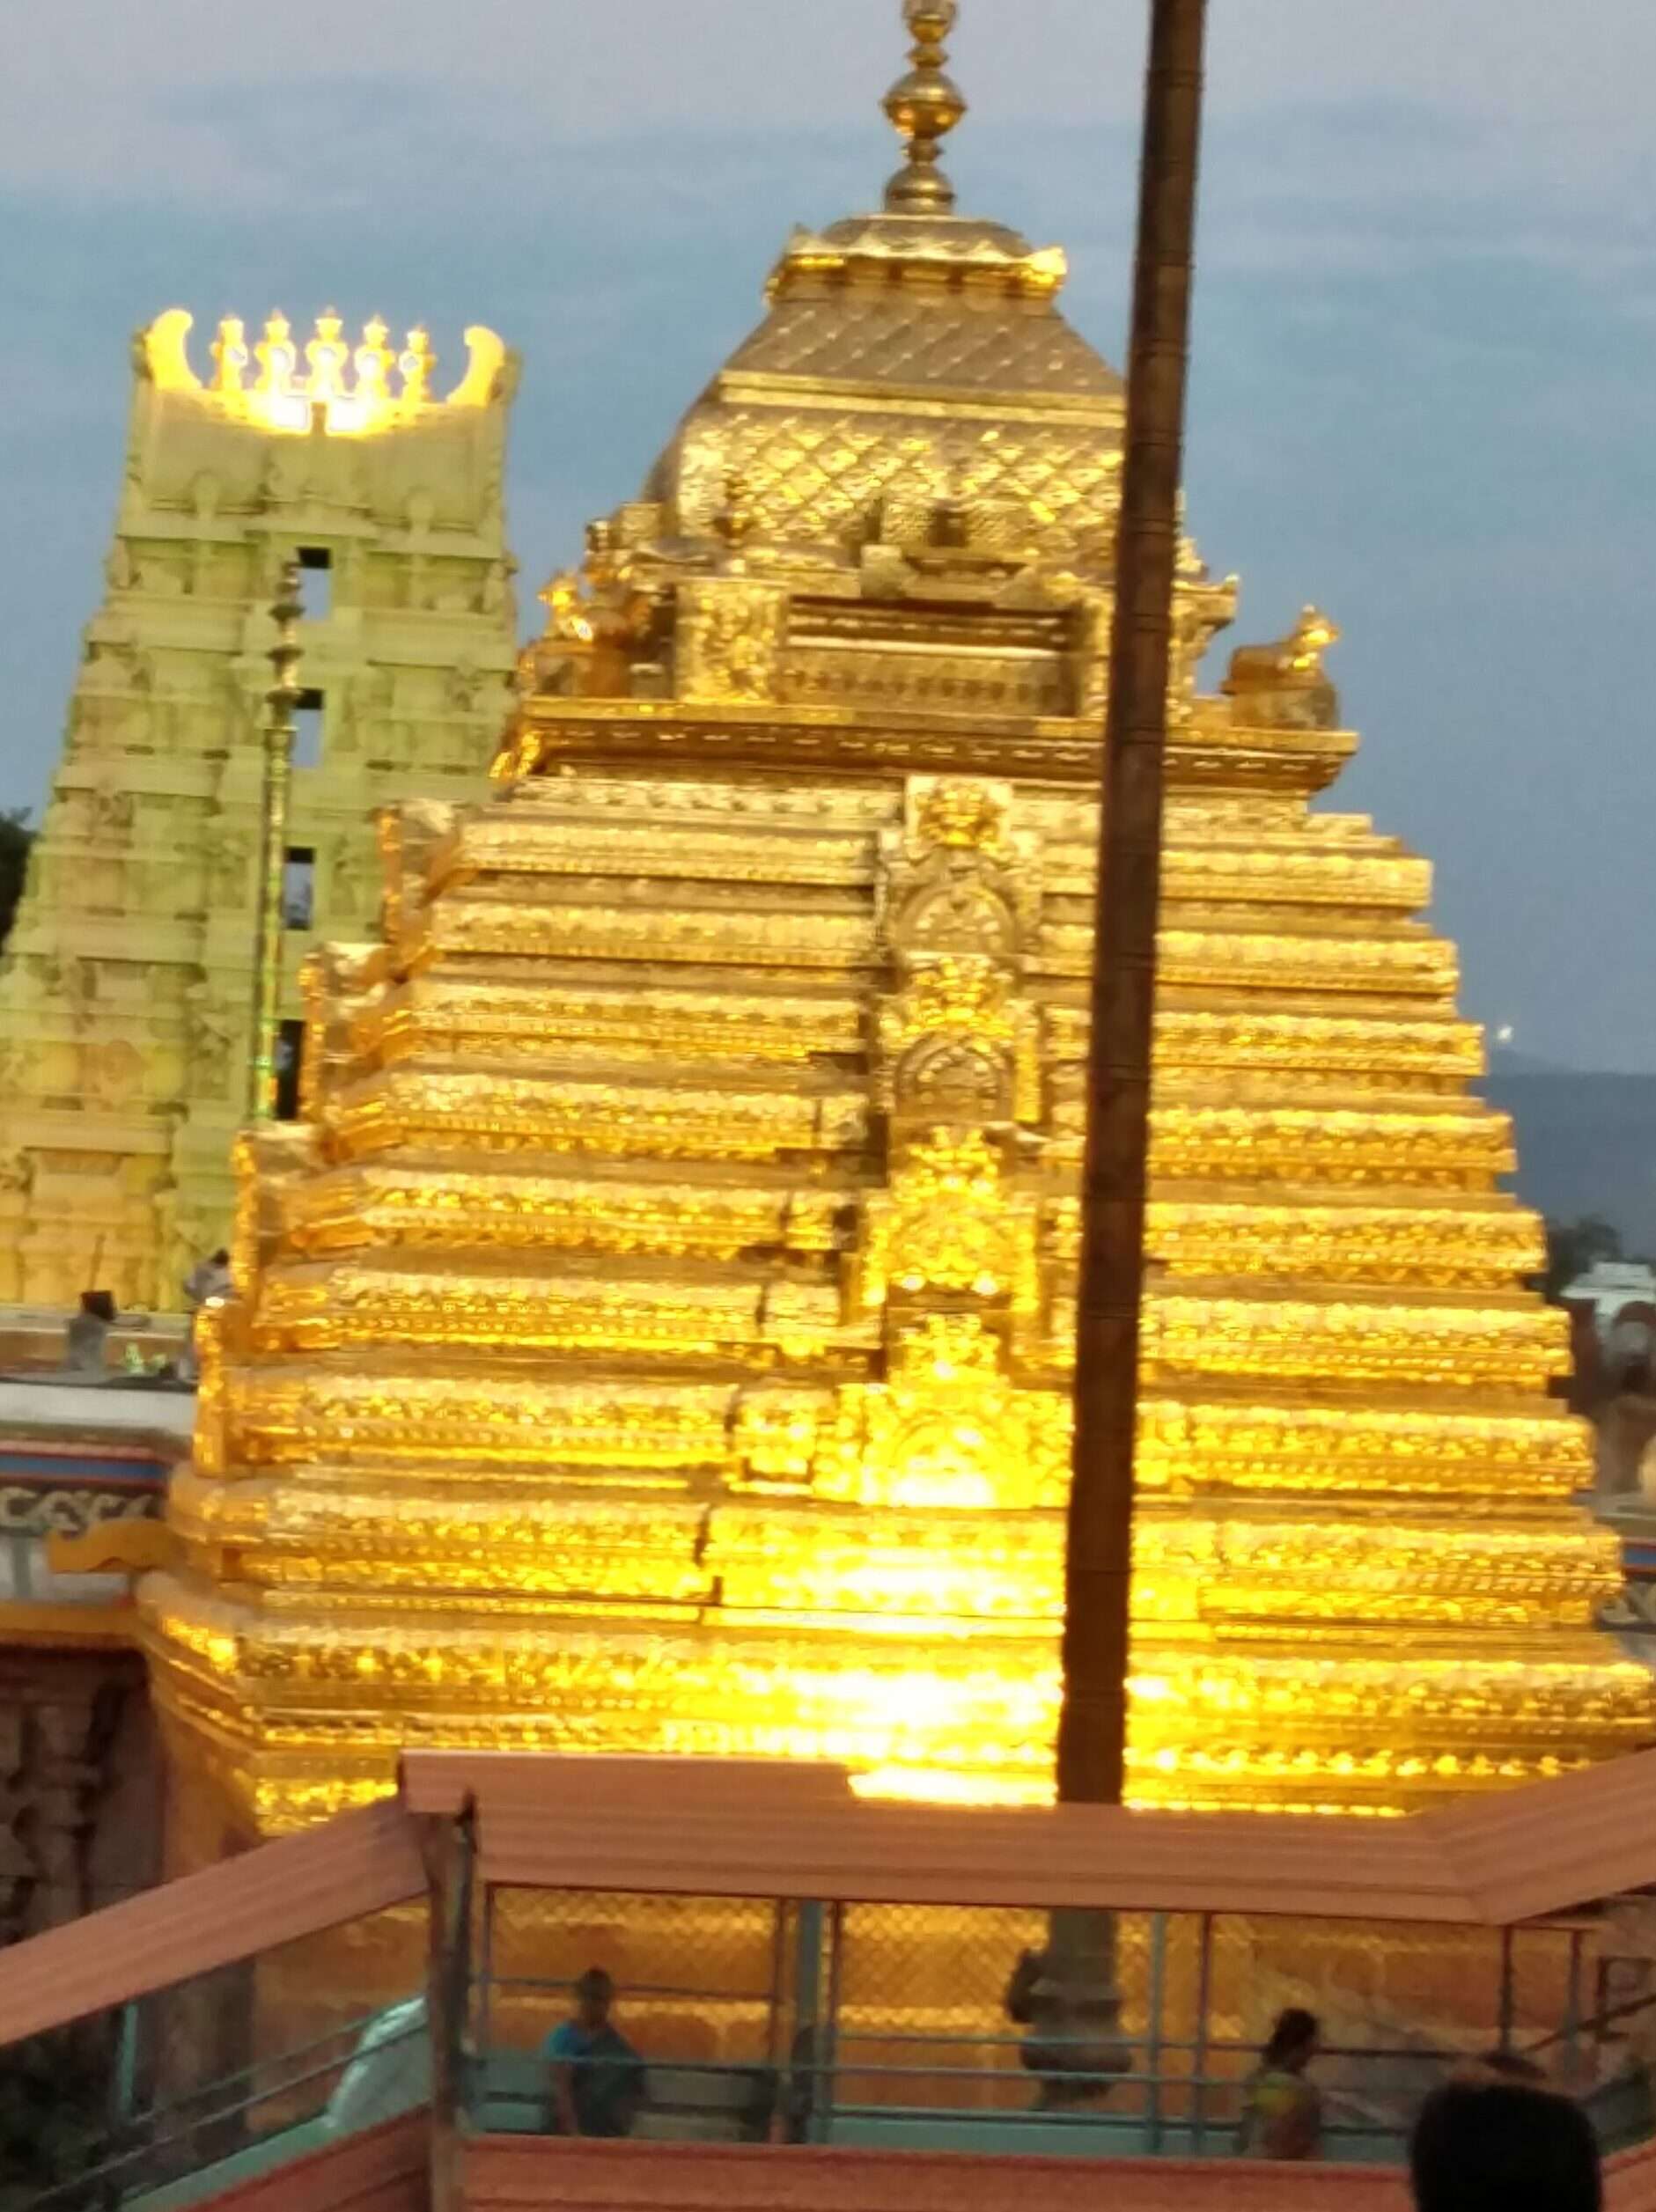 Mallikarjuna Temple